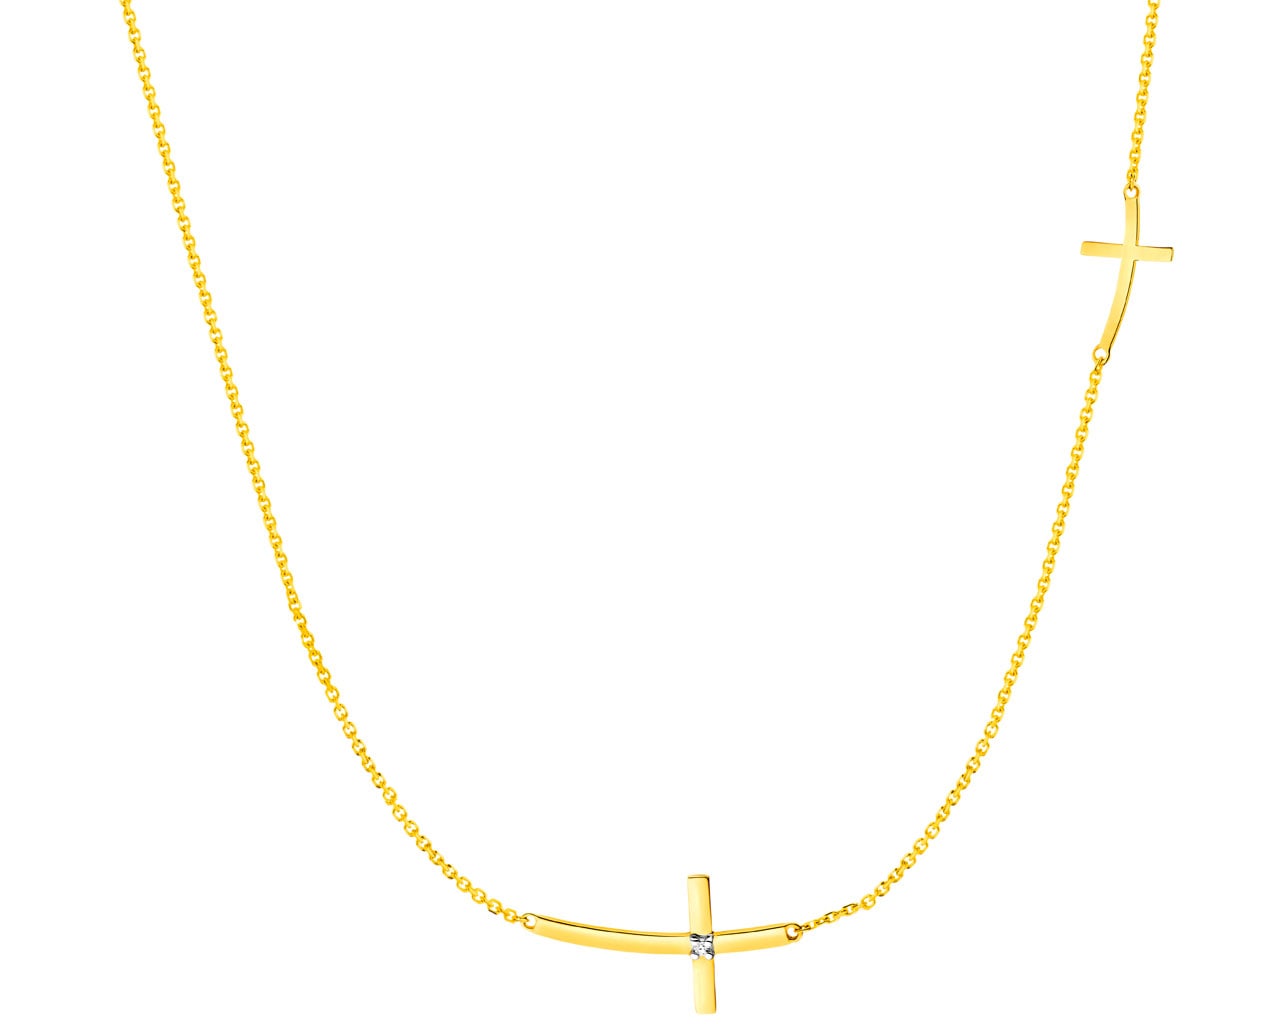 Naszyjnik z żółtego złota z diamentem - krzyże 0,004 ct - próba 375